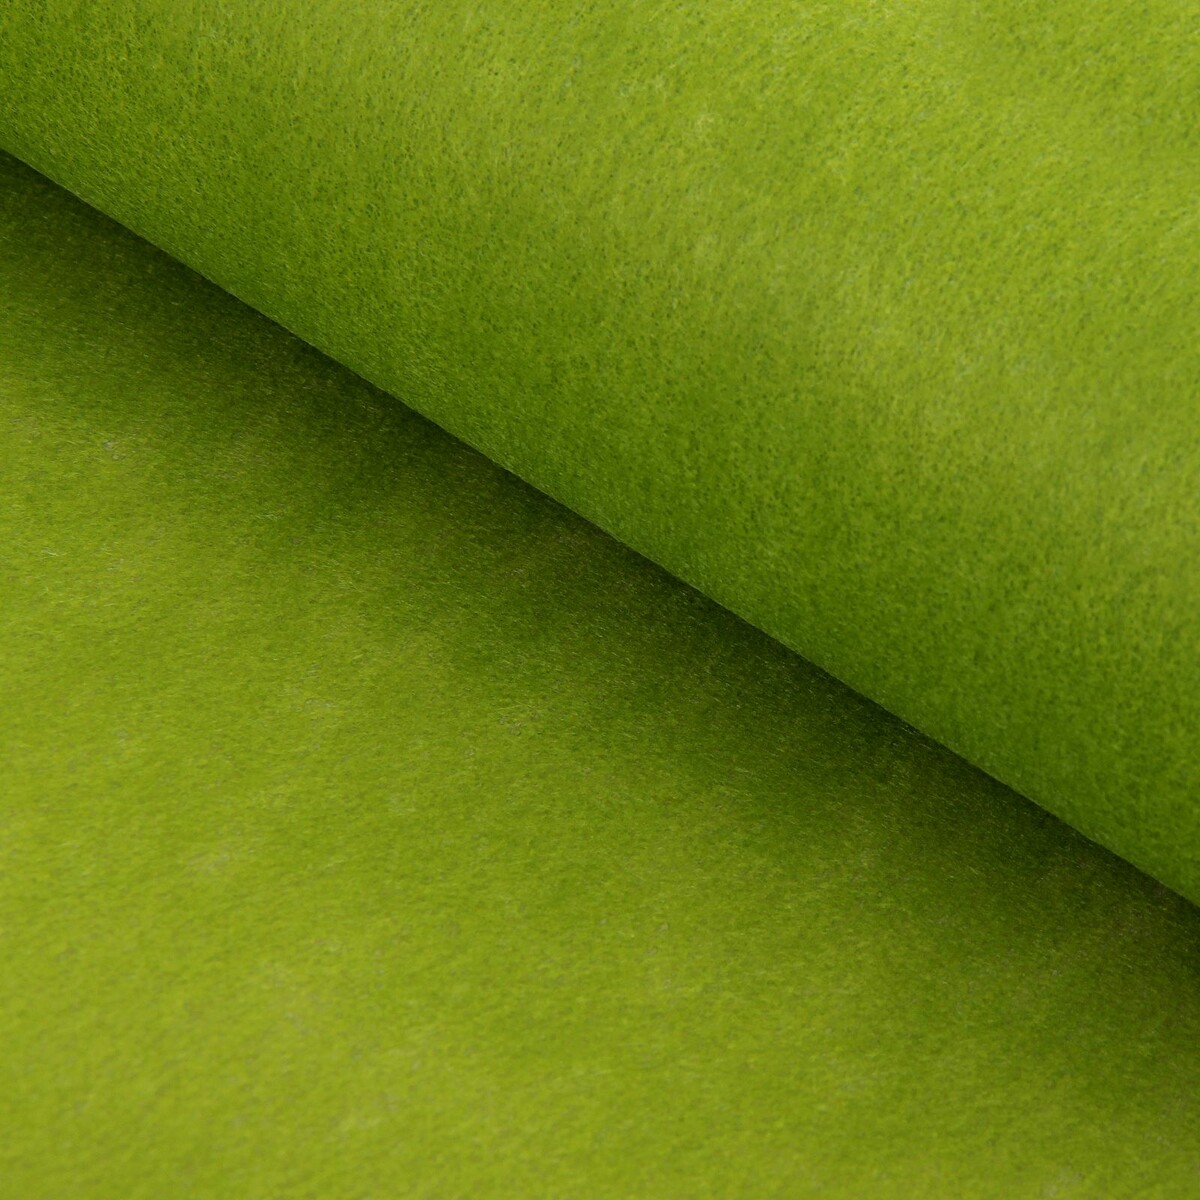 Фетр для упаковок и поделок, однотонный, оливковый, двусторонний, зеленый, рулон 1шт., 50 см x 15 м мыло листовое в пластиковом футляре рулон 120 см зеленый